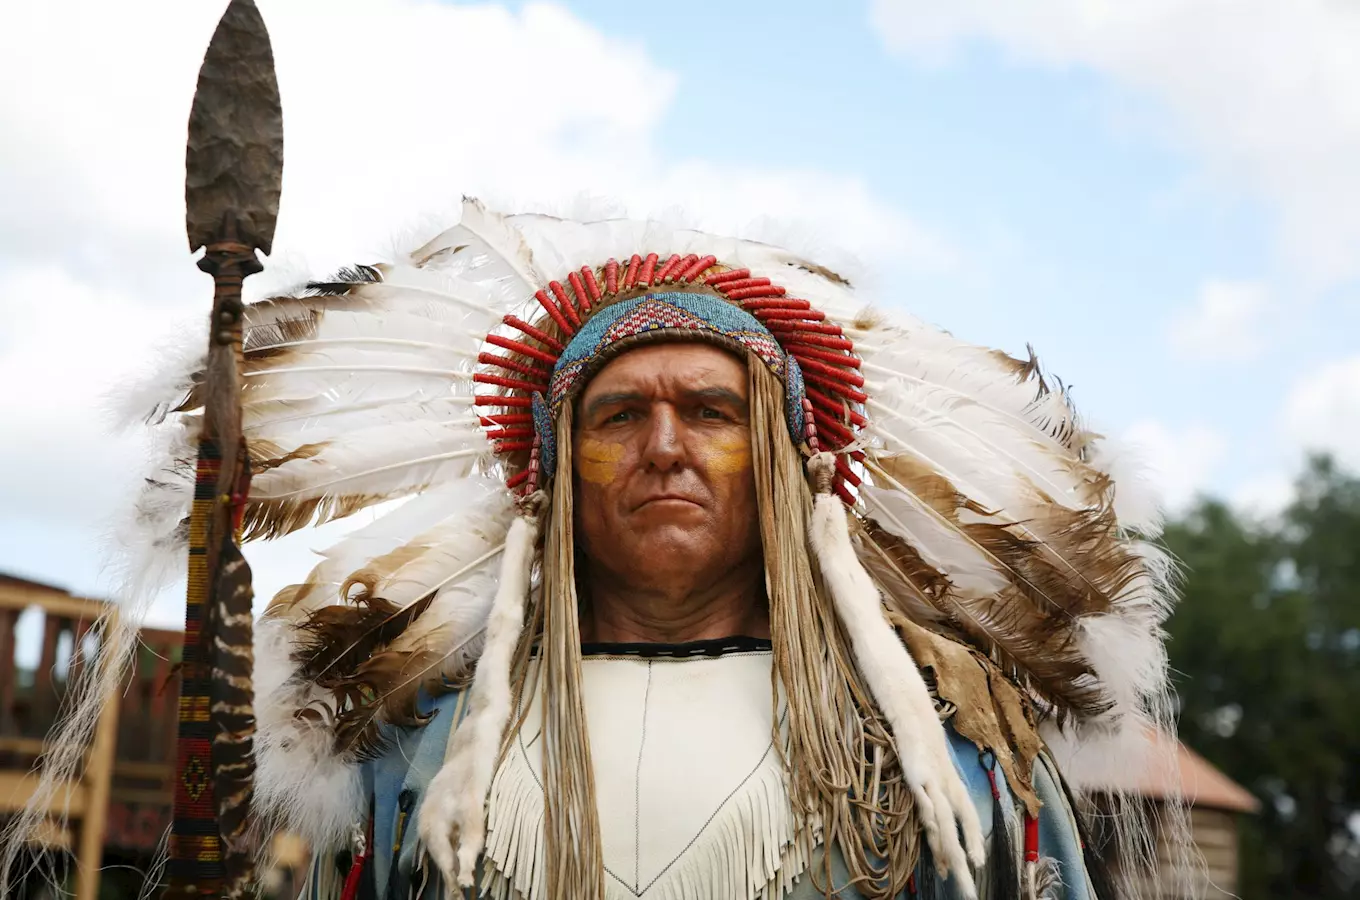 Tento víkend máte poslední možnost navštívit indiány v Náprstkove muzeu